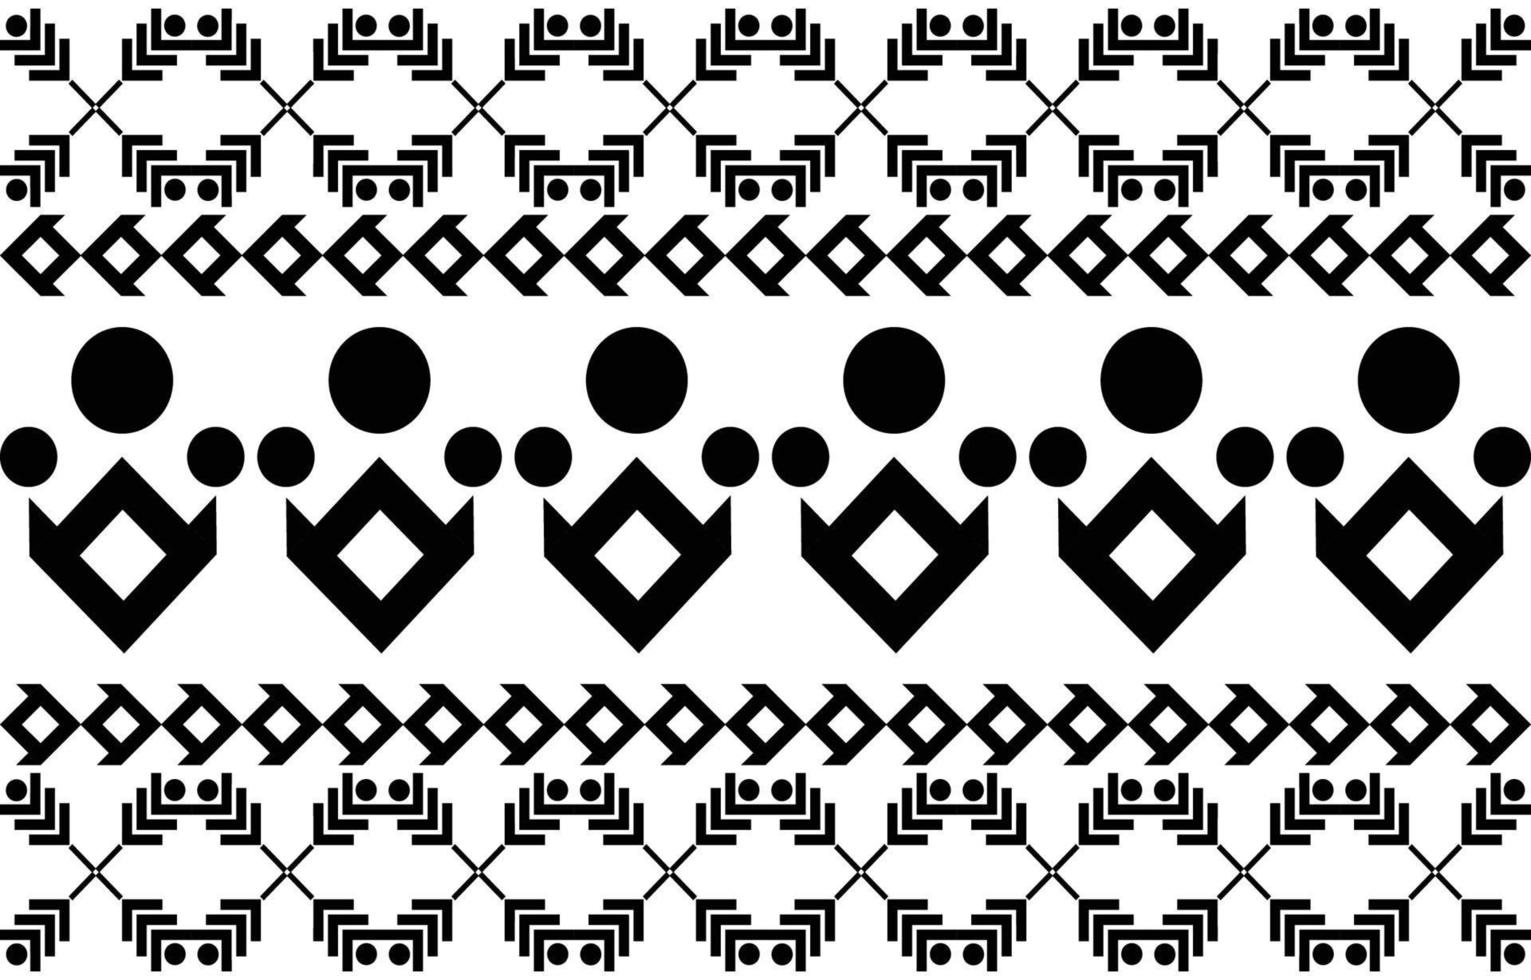 Tribal zwart-wit abstract etnisch geometrisch patroonontwerp voor achtergrond of wallpaper.vector illustratie om stofpatronen, vloerkleden, overhemden, kostuums, tulband, hoeden, gordijnen af te drukken. vector